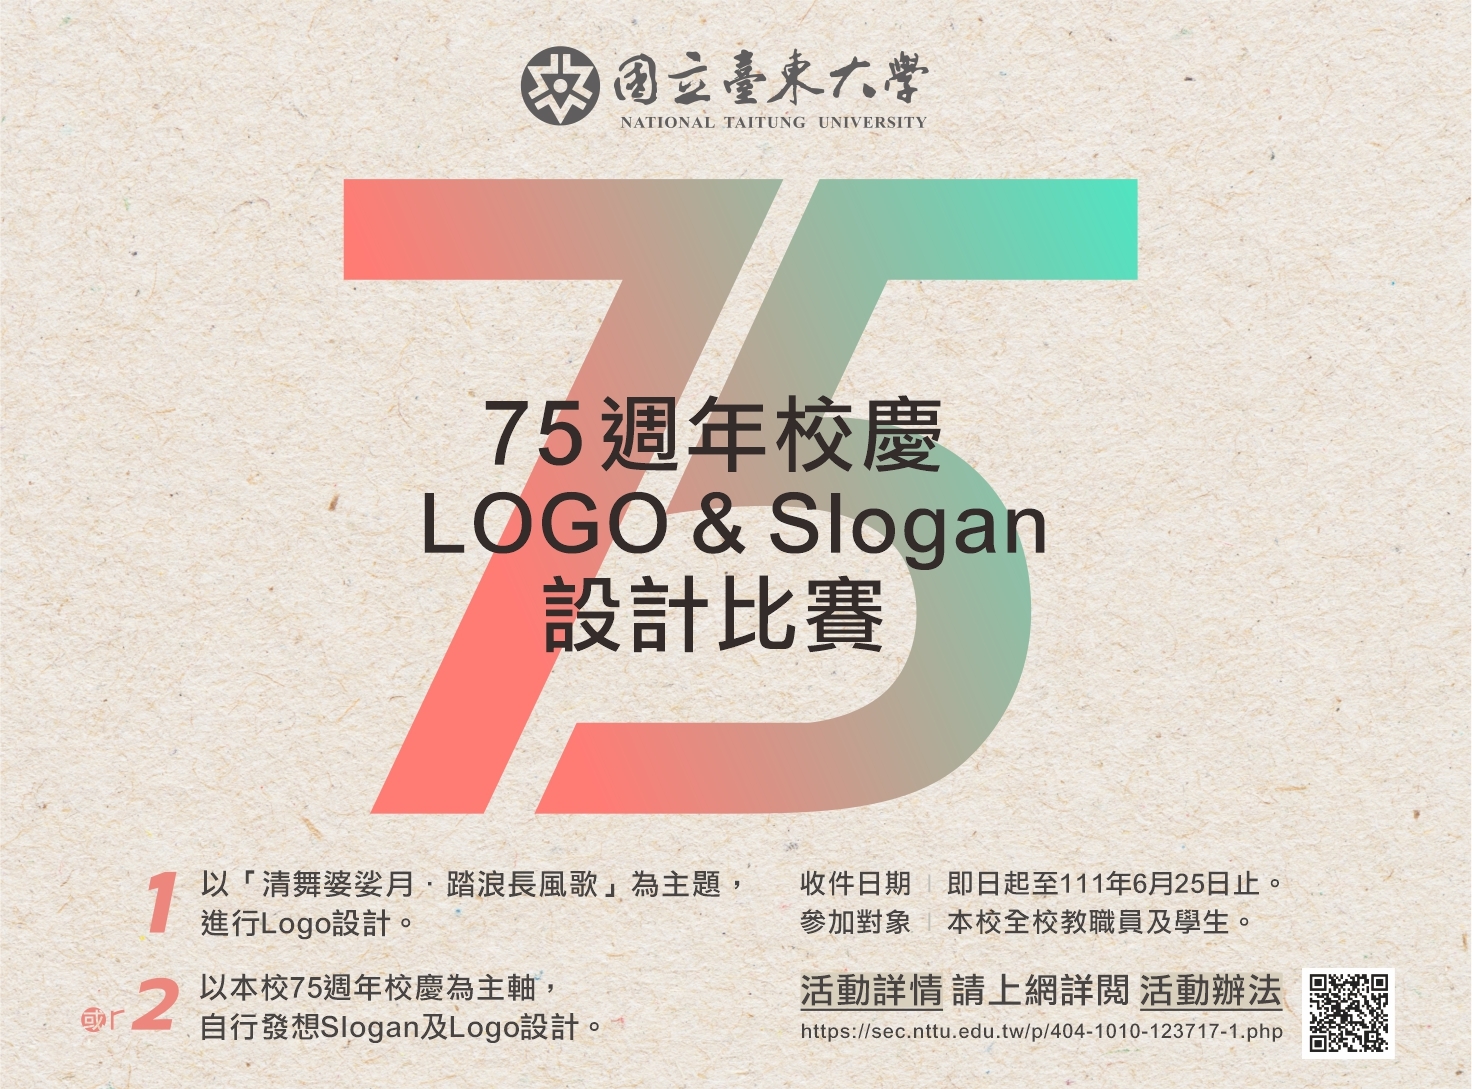 「臺東大學75週年校慶Logo及Slogan設計比賽」活動辦法